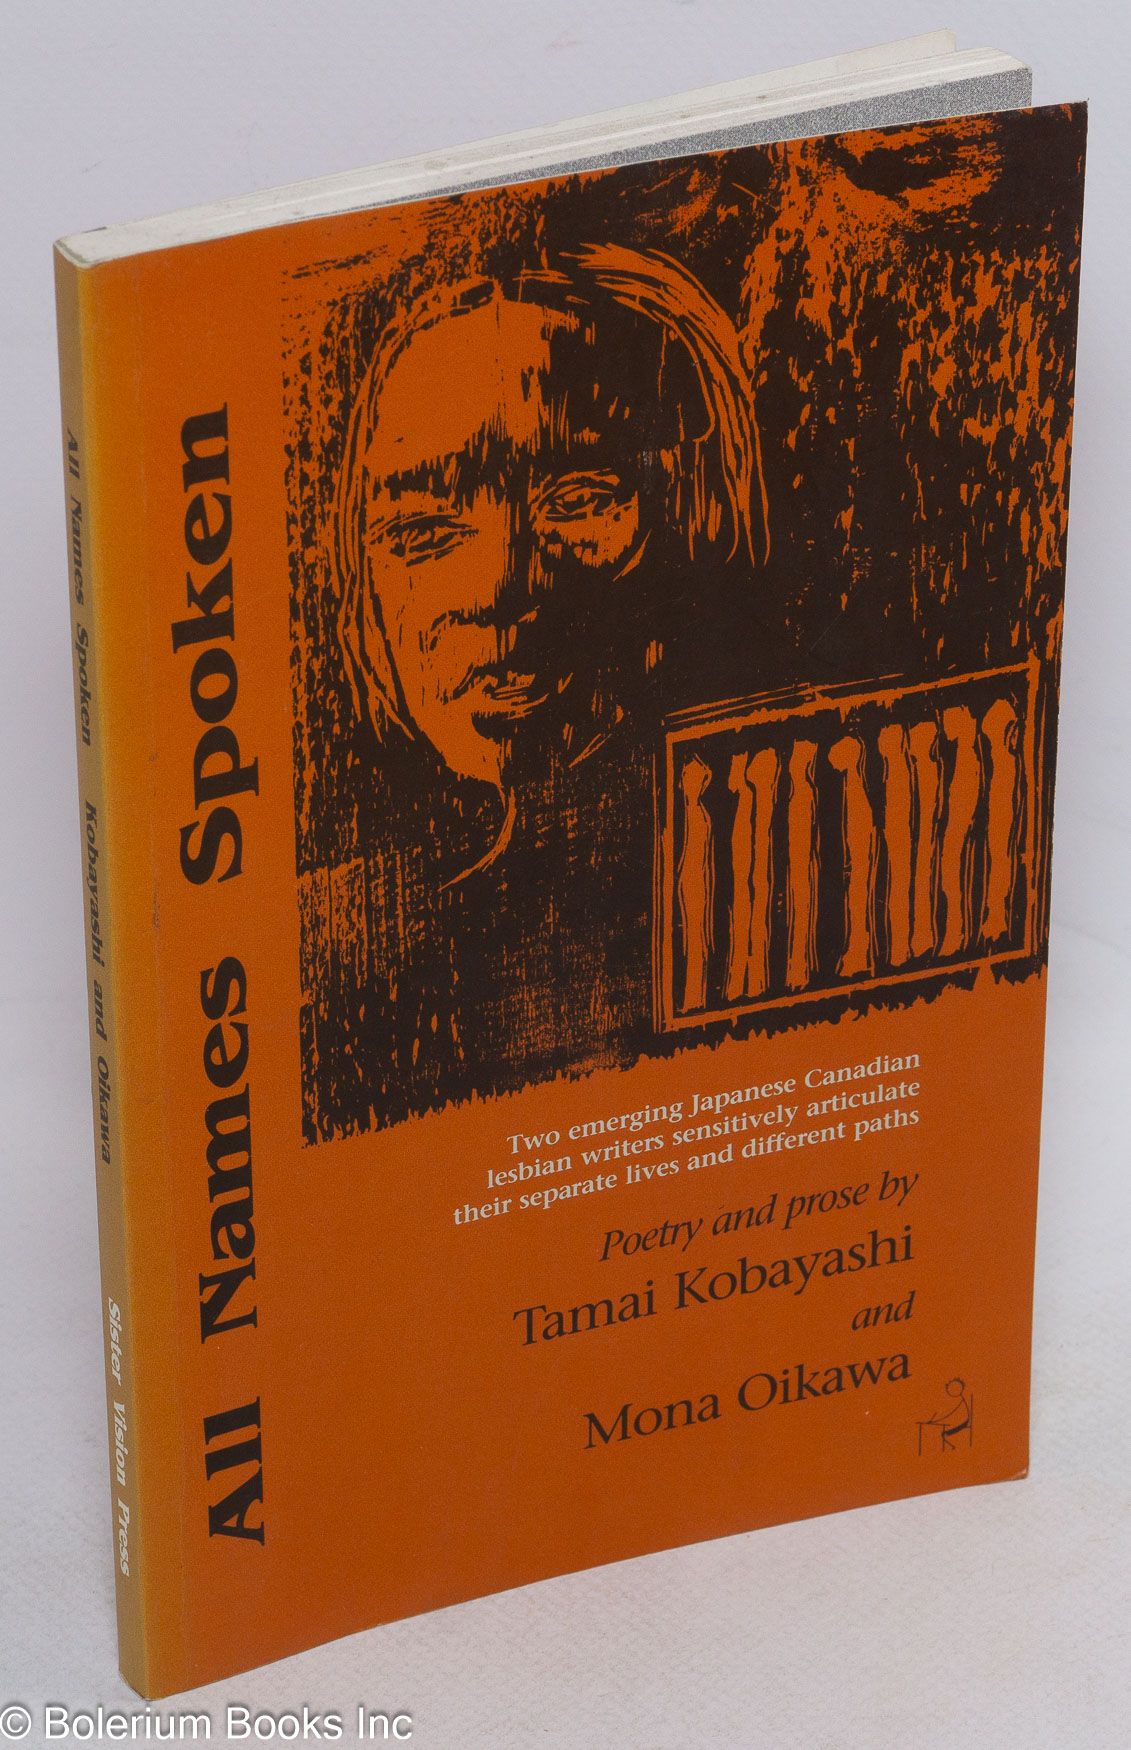 All names spoken; poetry and prose - Kobayashi, Tamai and Mona Oikawa